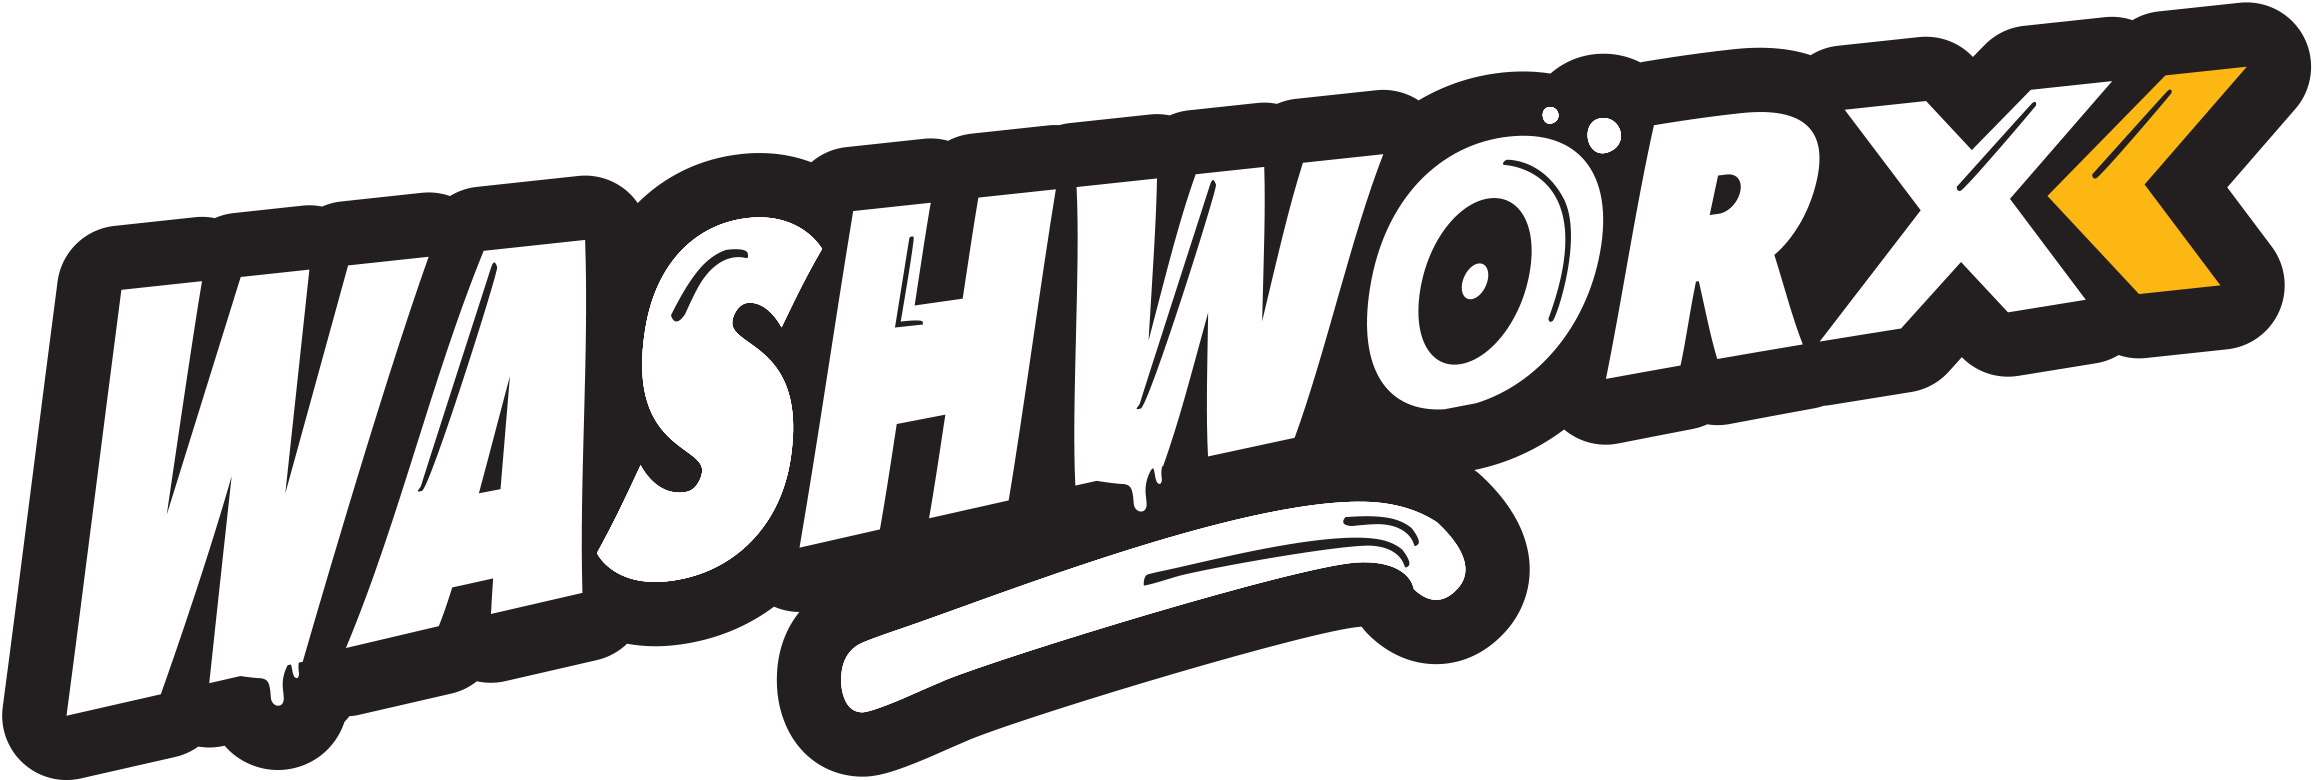 washworx logo